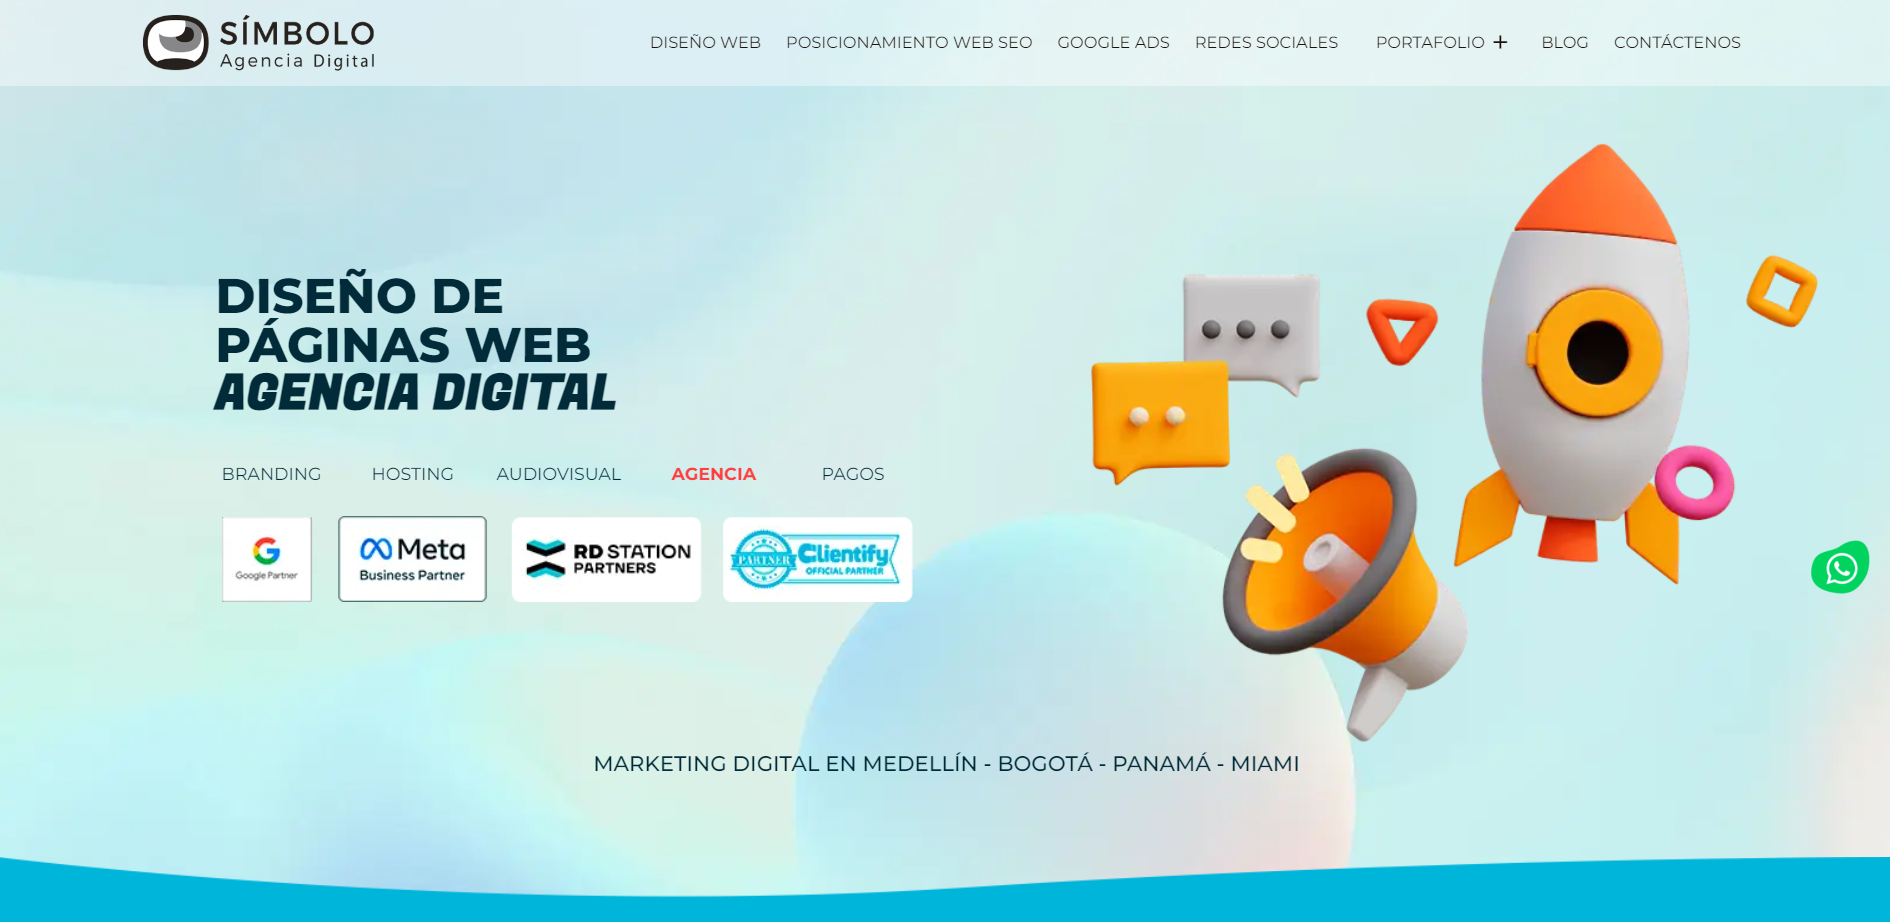 Símbolo Agencia Digital es una de las mejores agencias de marketing en América Latina